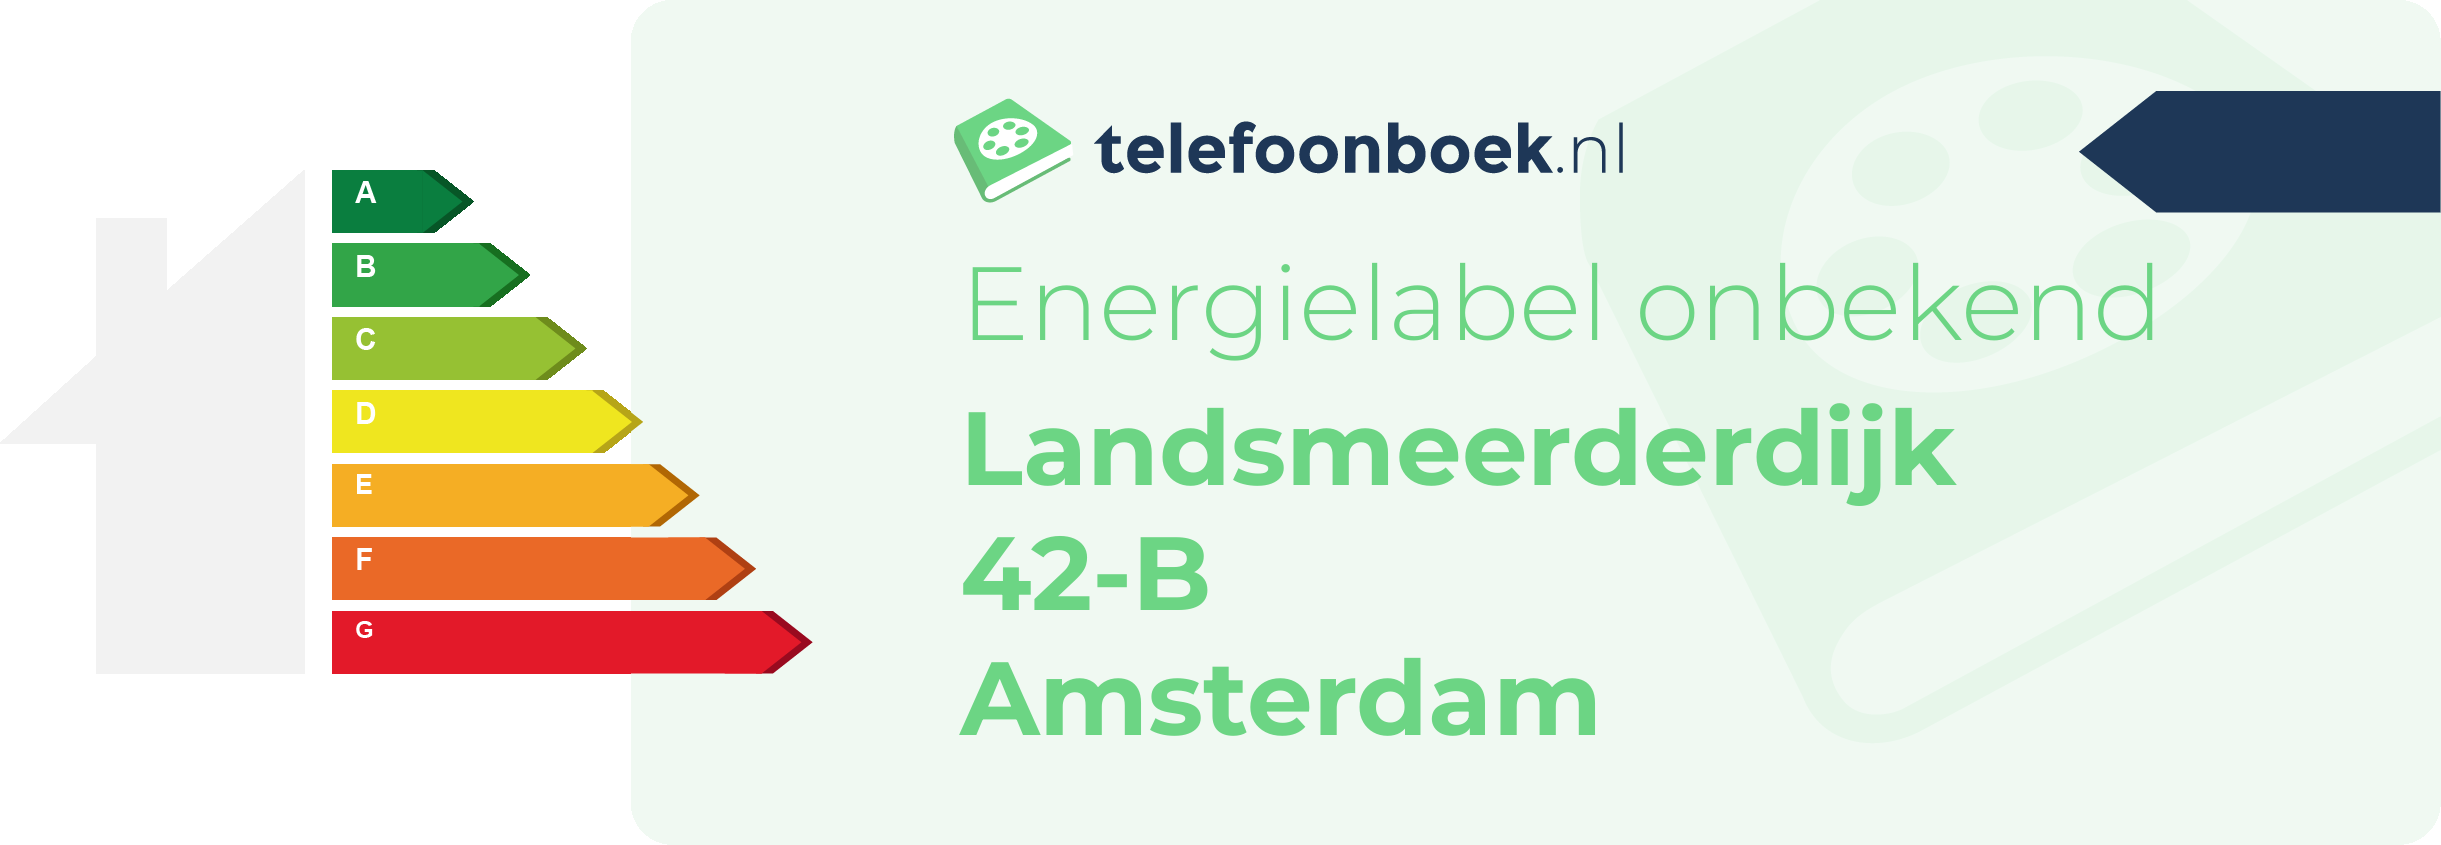 Energielabel Landsmeerderdijk 42-B Amsterdam